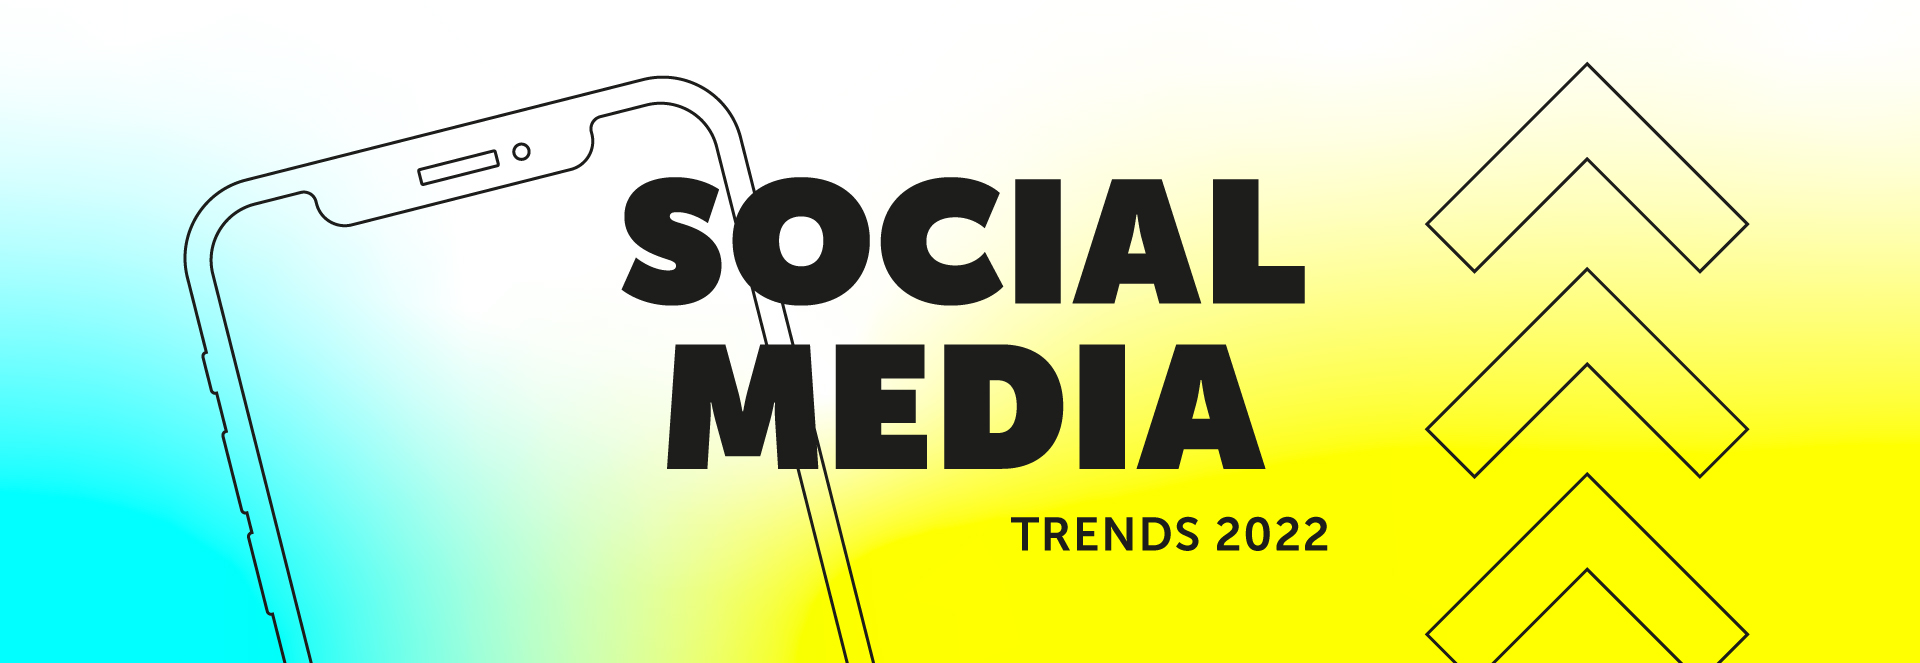 Social Media Trends 2022